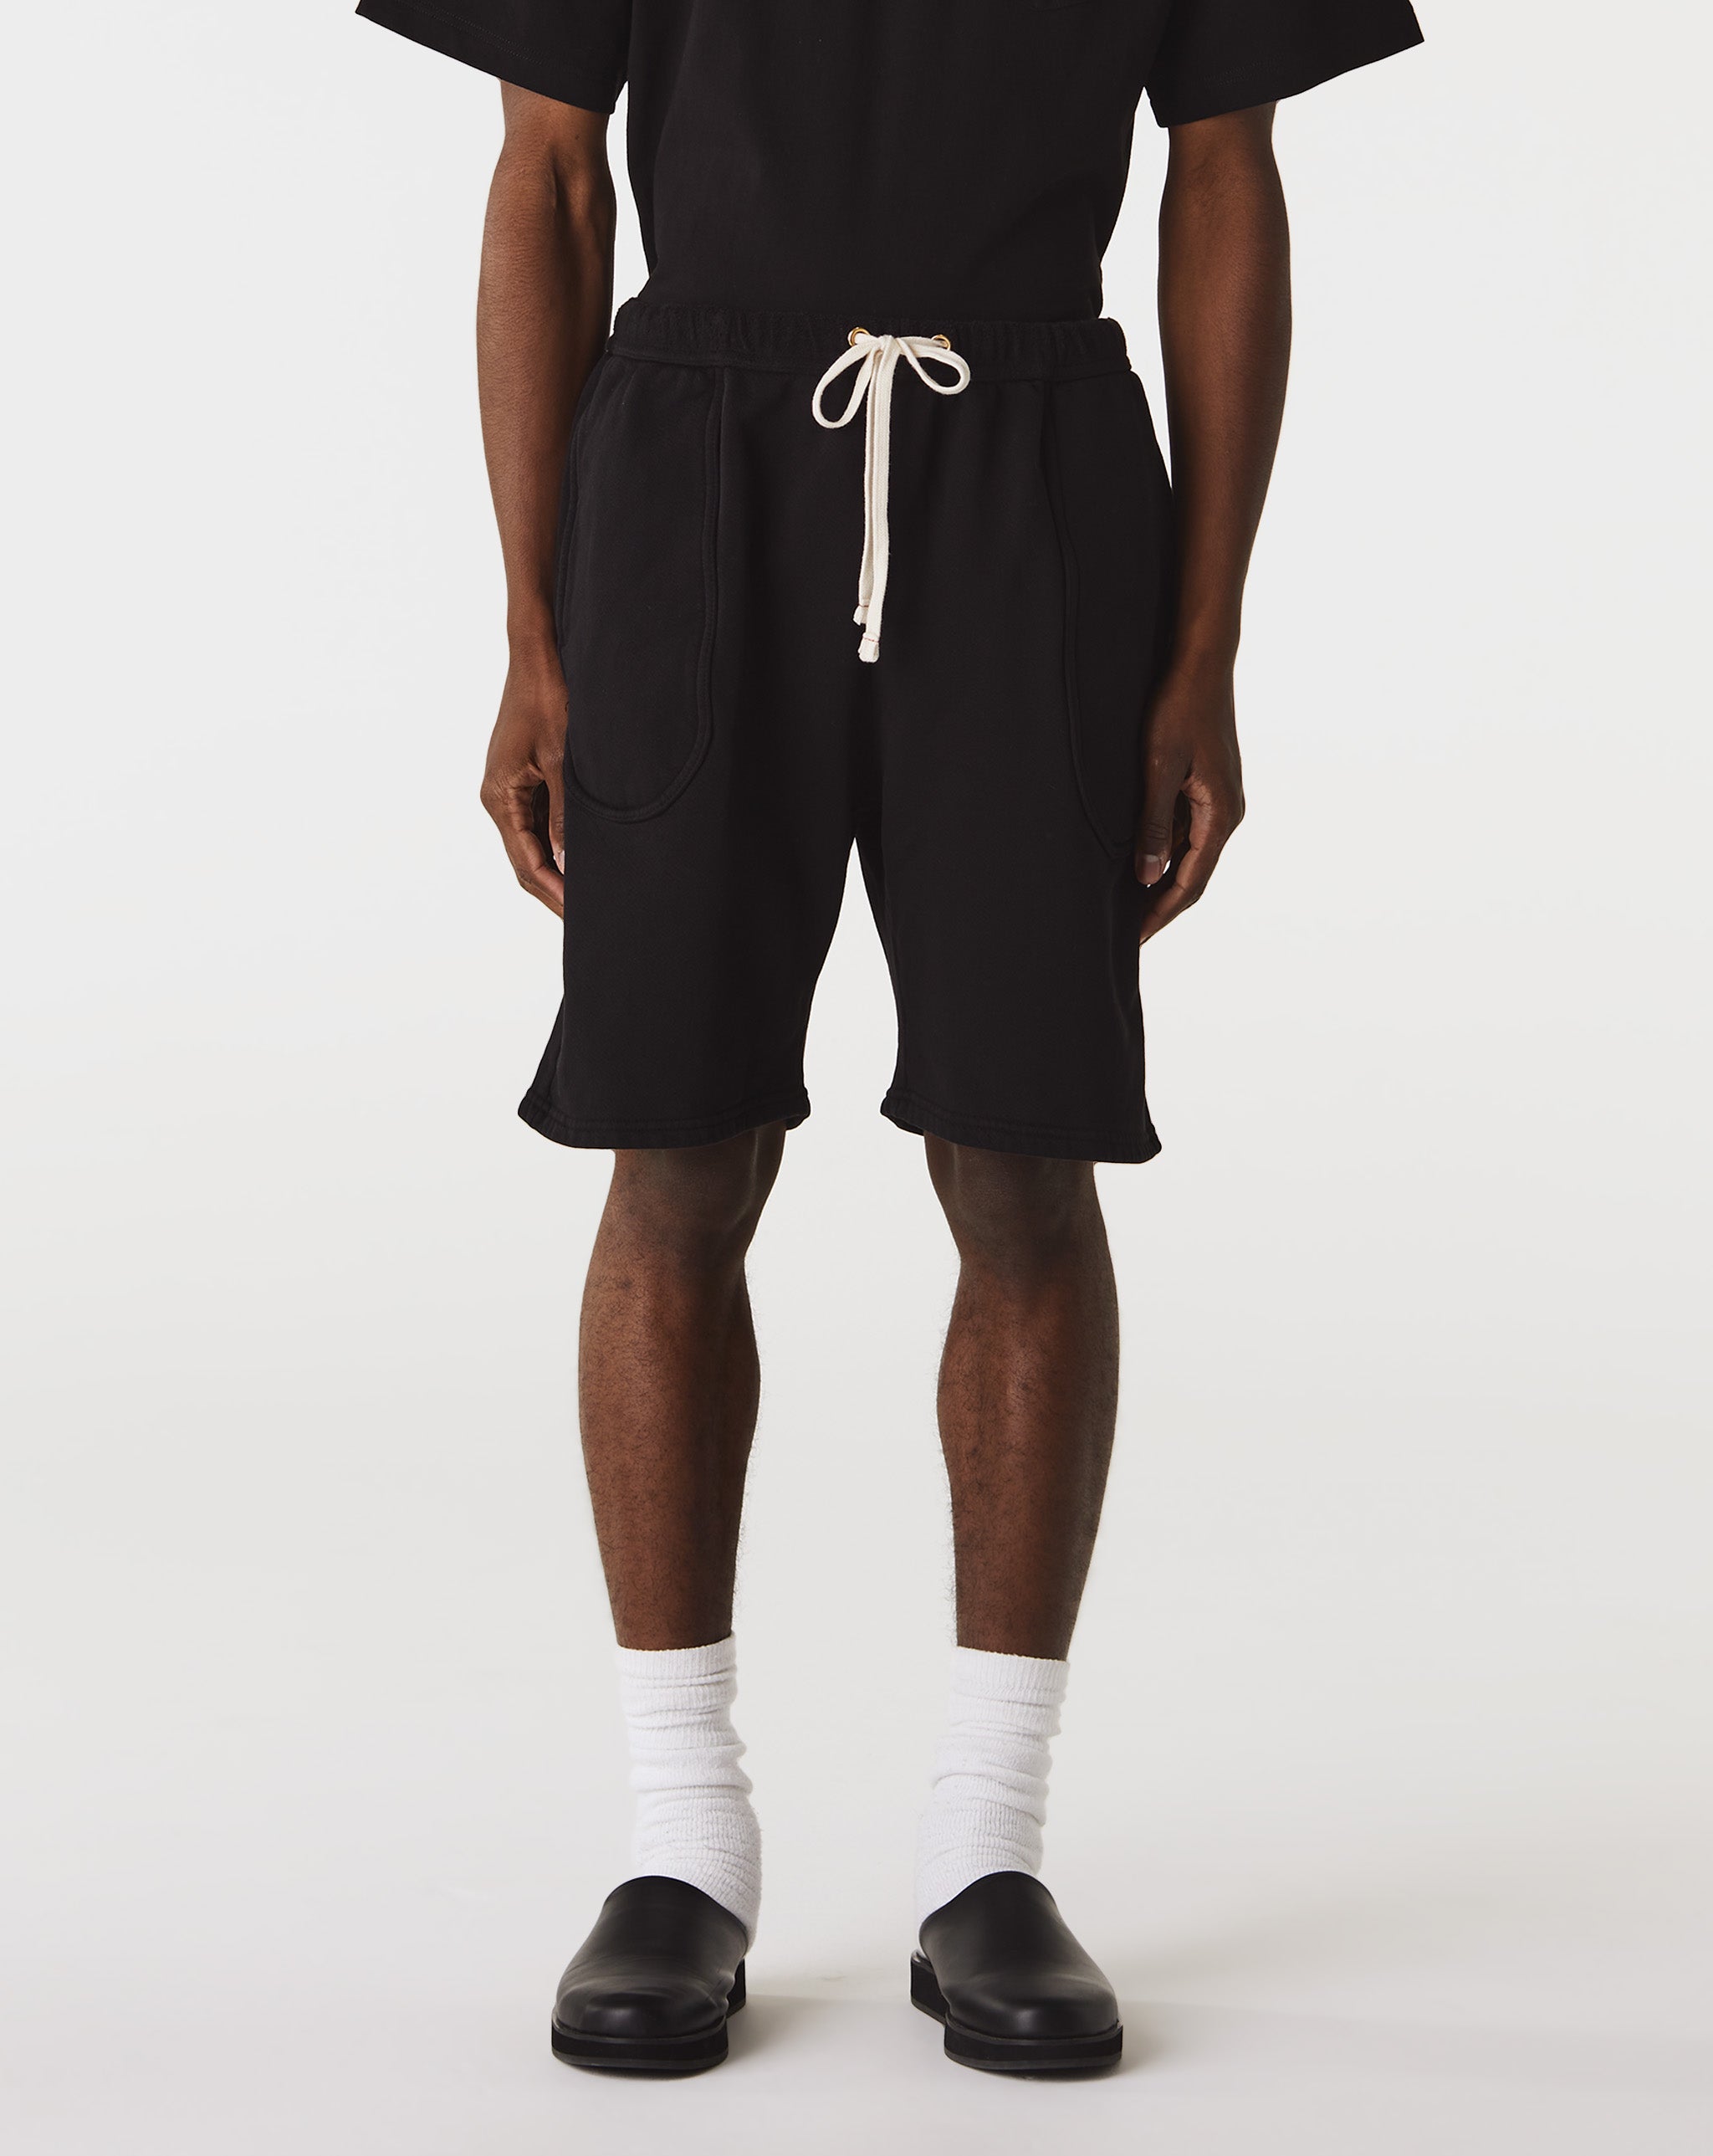 Les Tien Breacher Leather Shorts  - Cheap Urlfreeze Jordan outlet